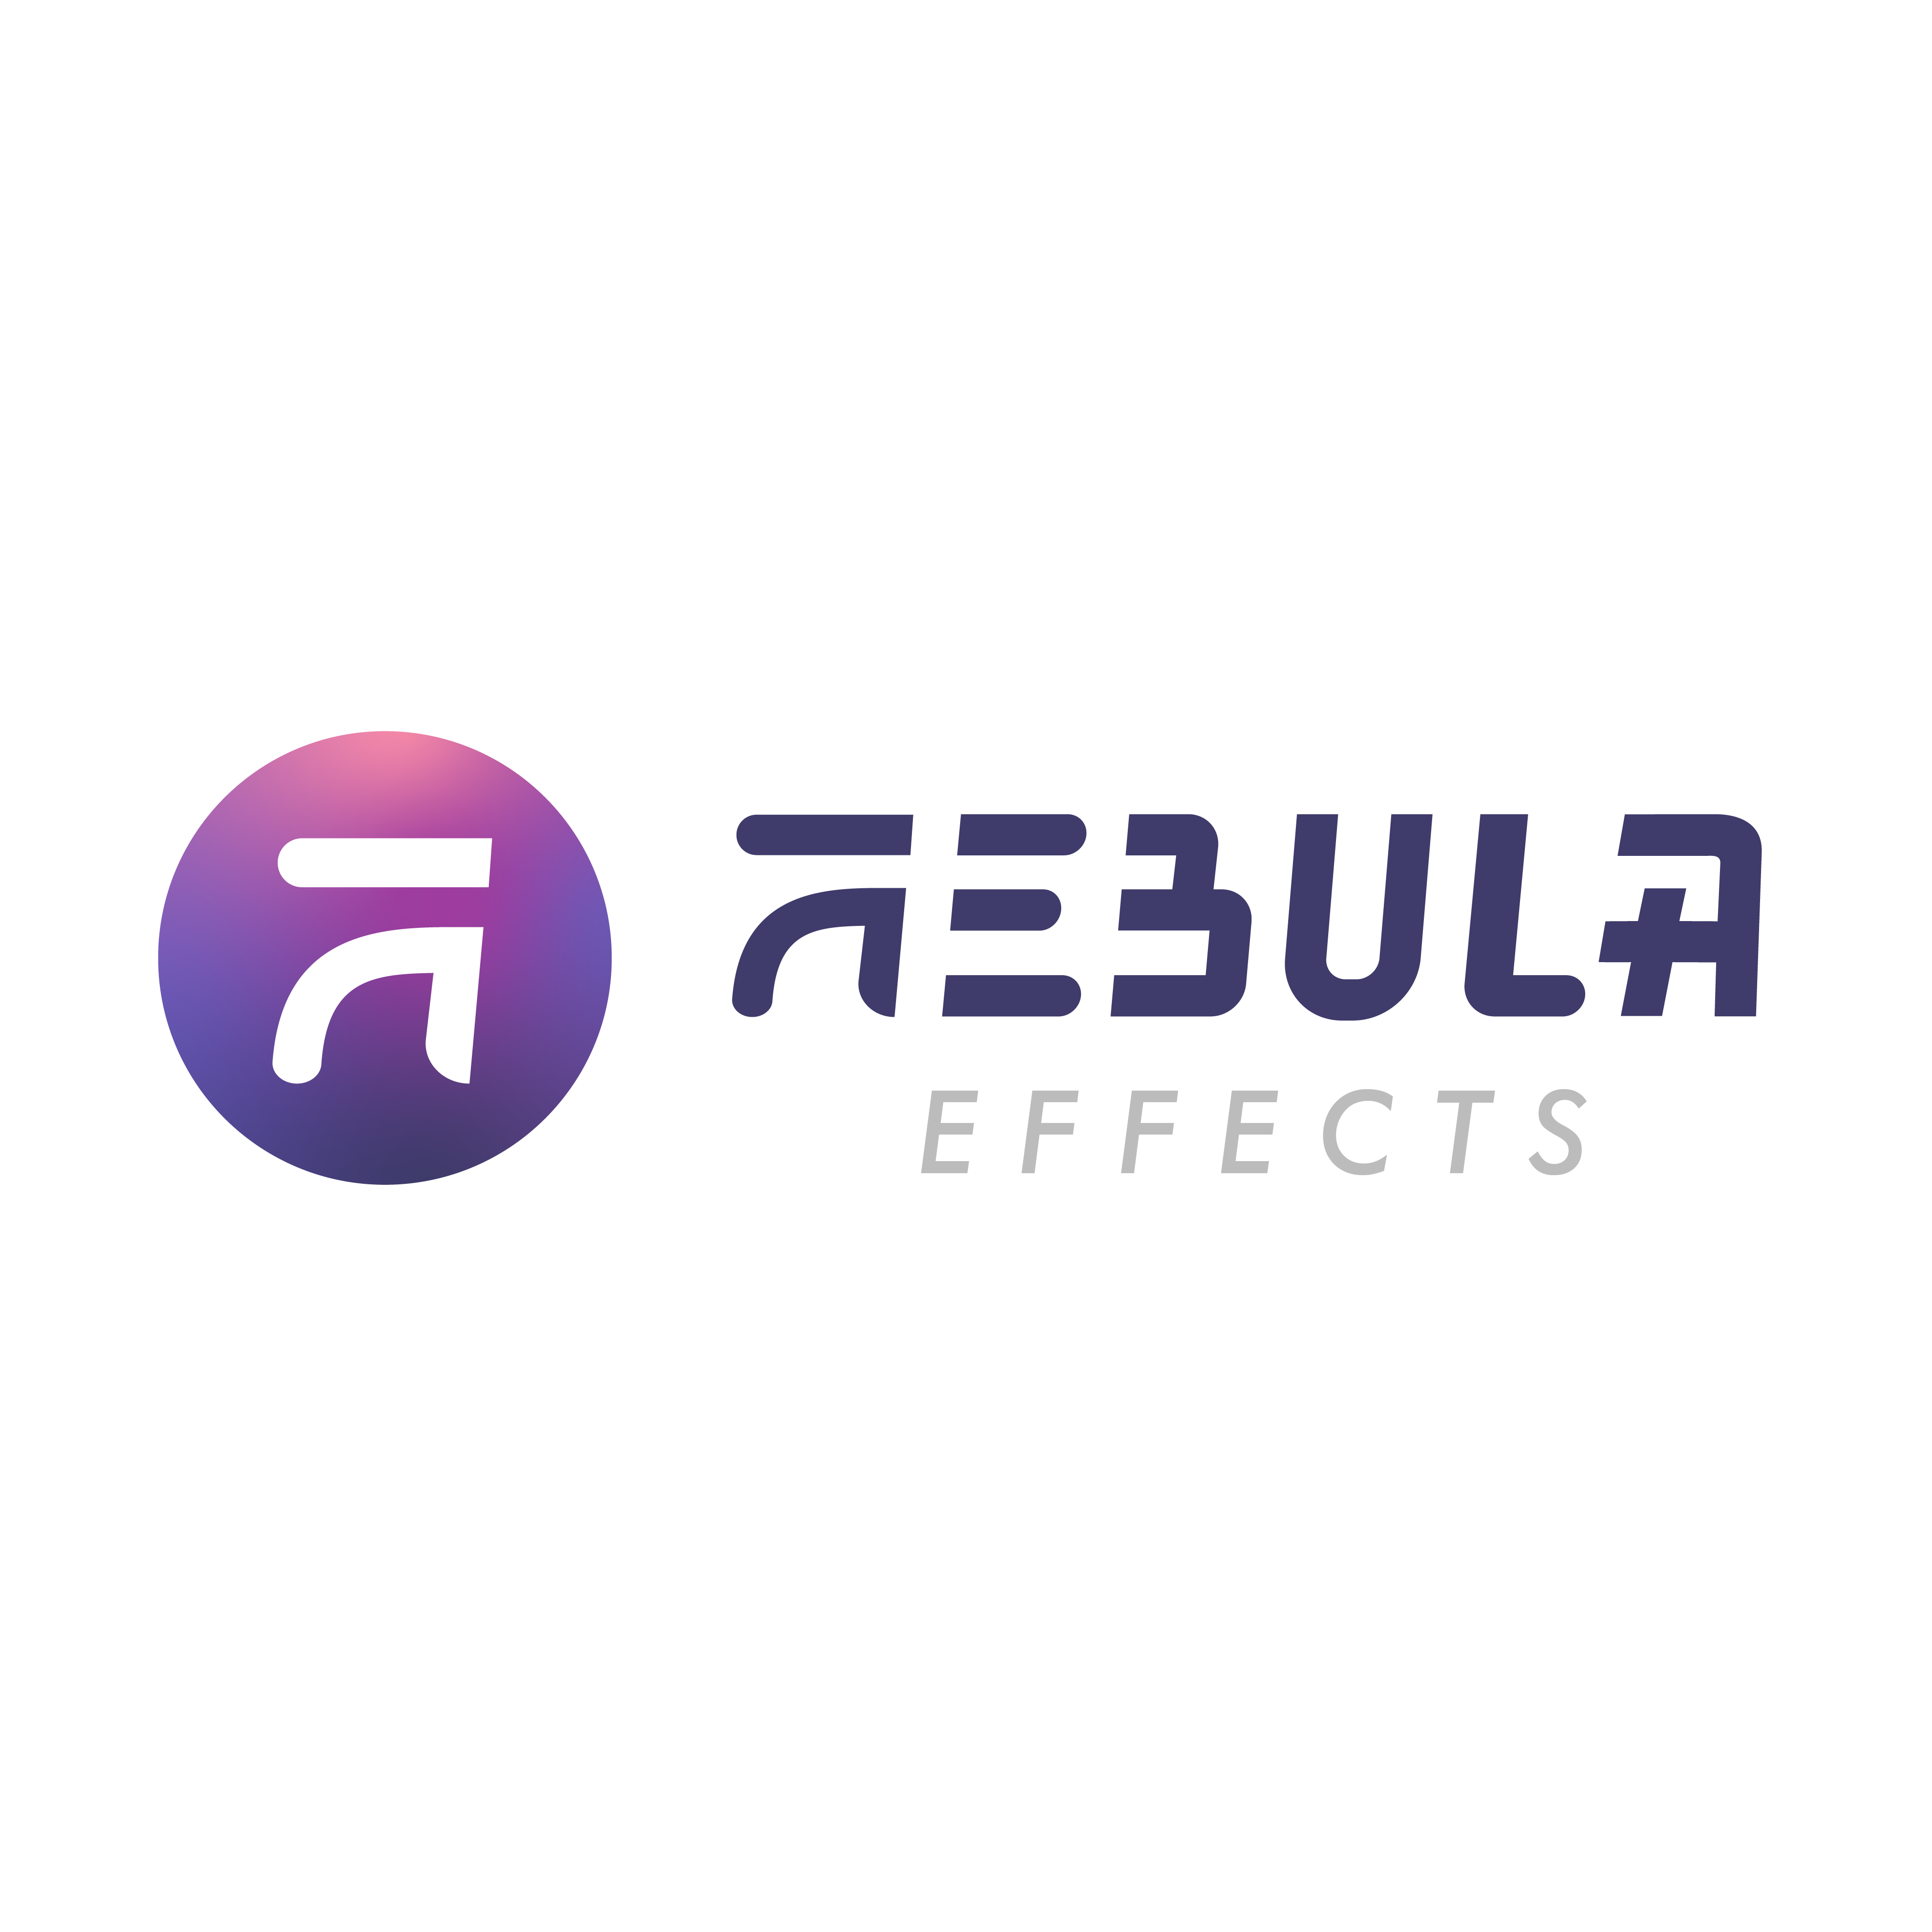 Nebula Effects